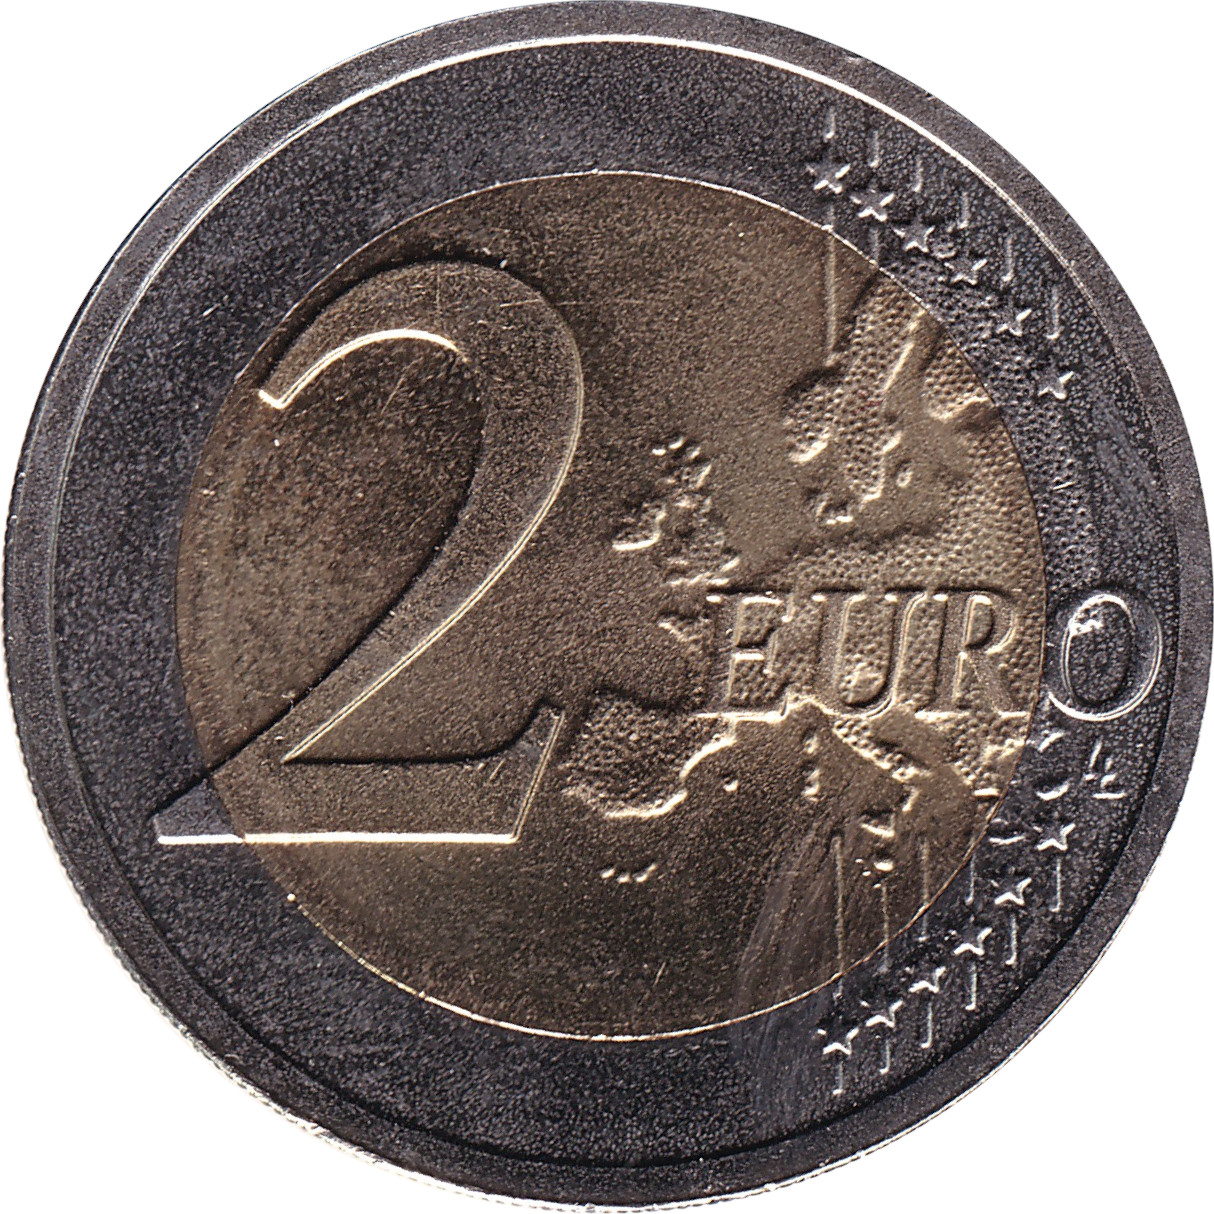 2 euro - Indépendance des Etats Baltes - 100 ans